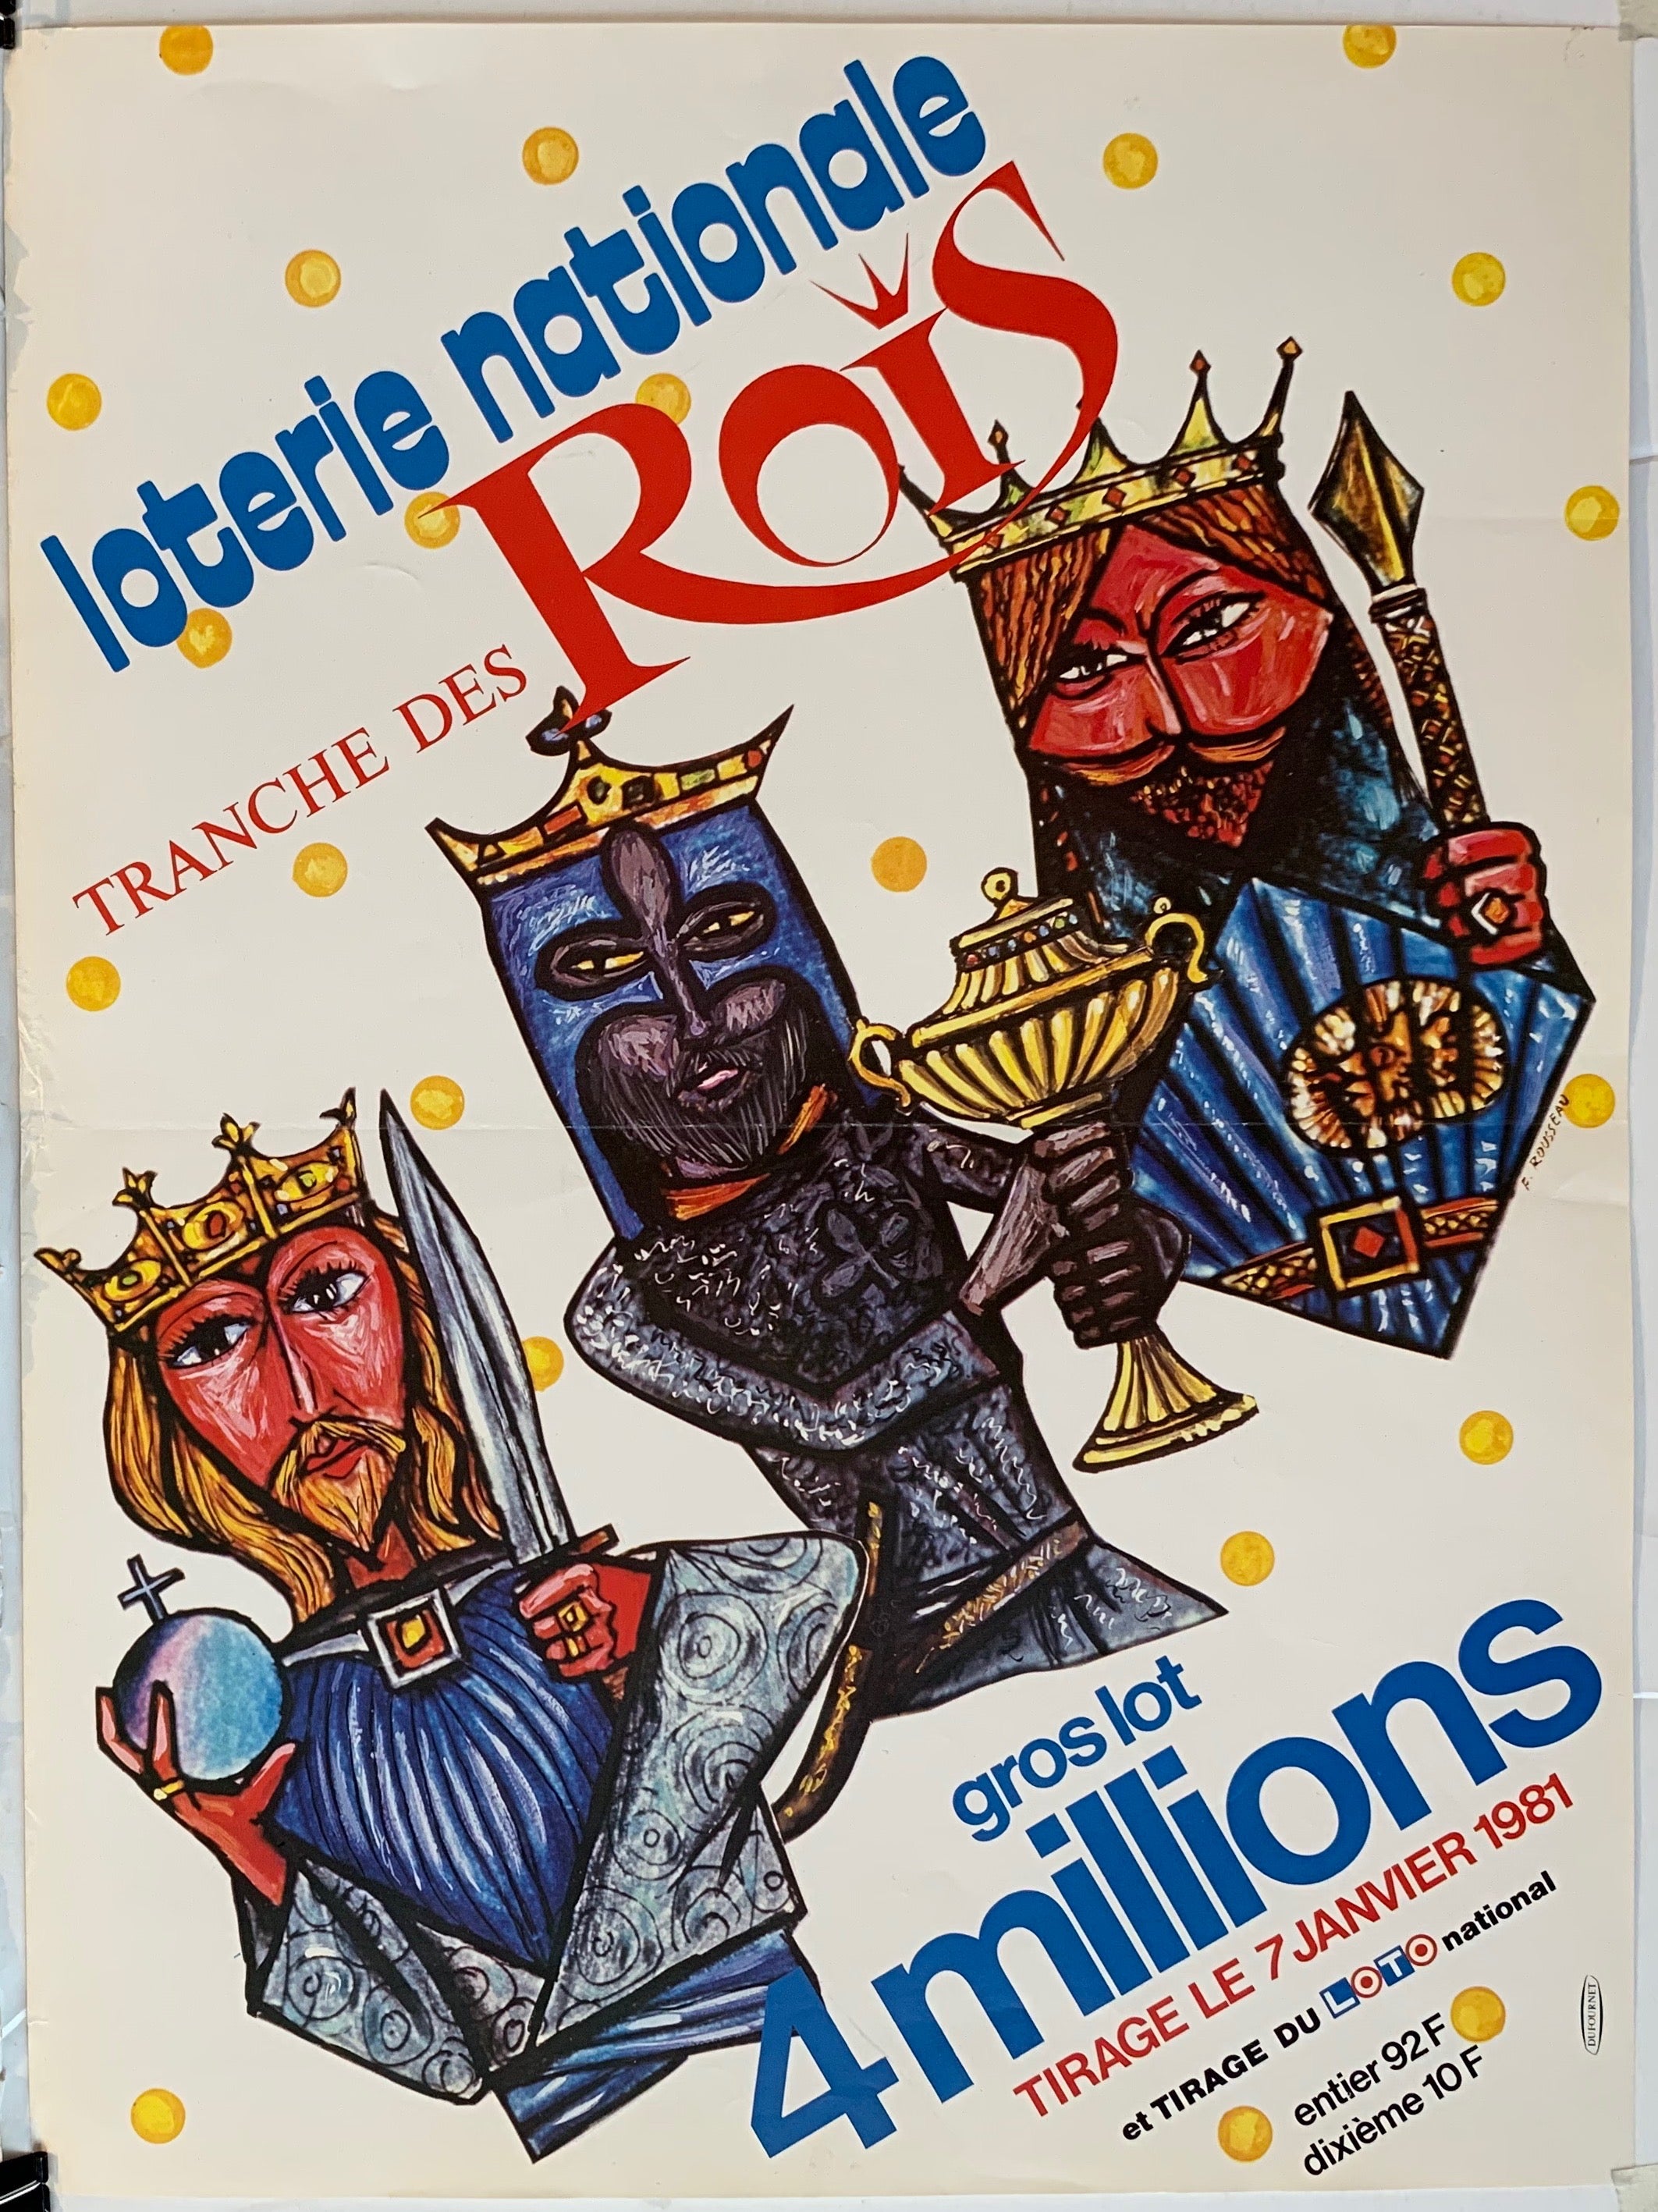 Loterie Nationale - "Tranche des Rois"